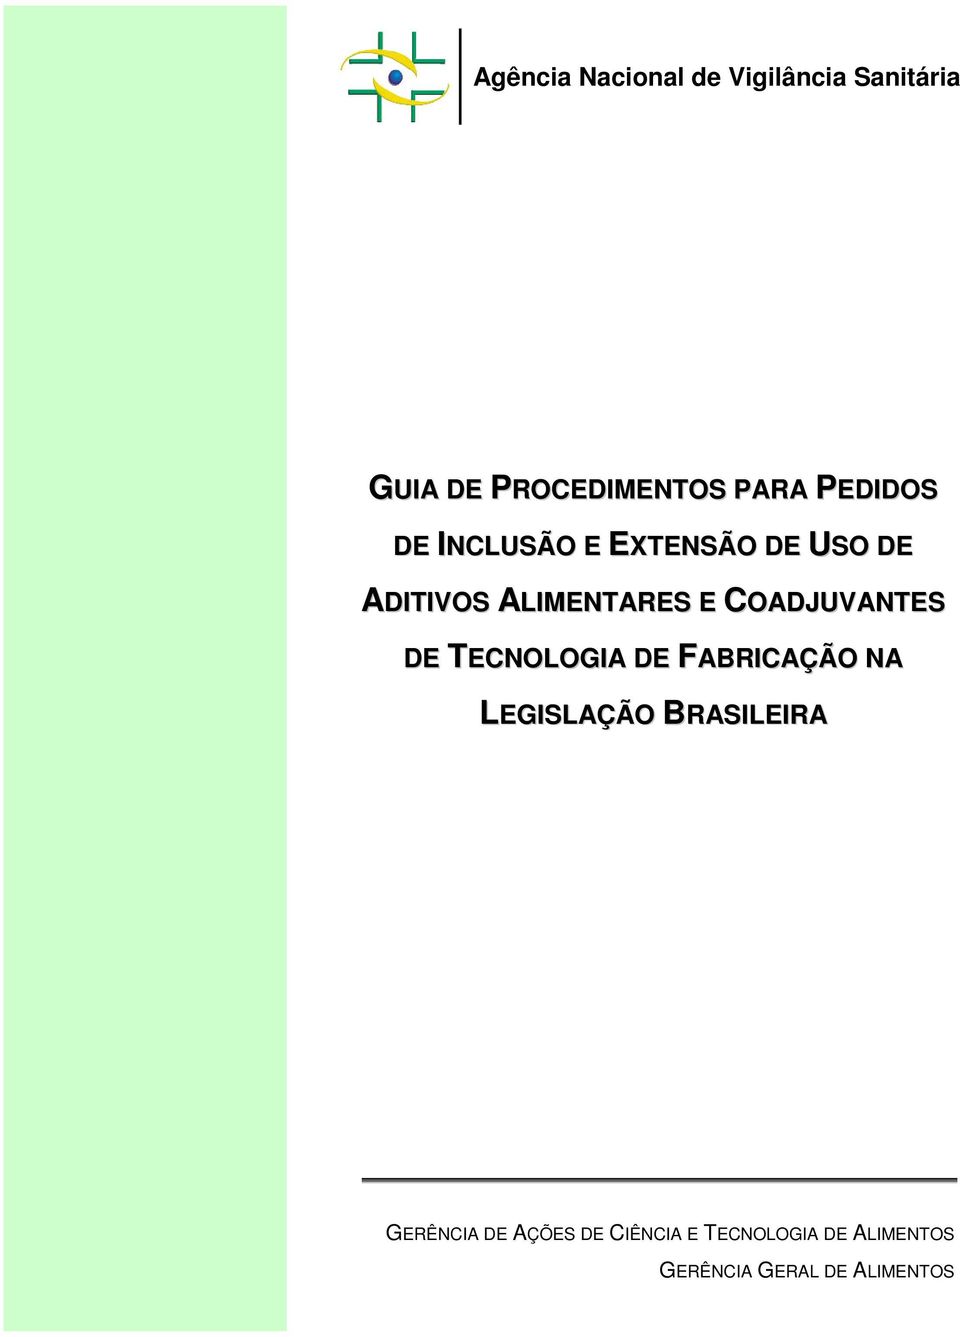 COADJUVANTES DE TECNOLOGIA DE FABRICAÇÃO NA LEGISLAÇÃO BRASILEIRA